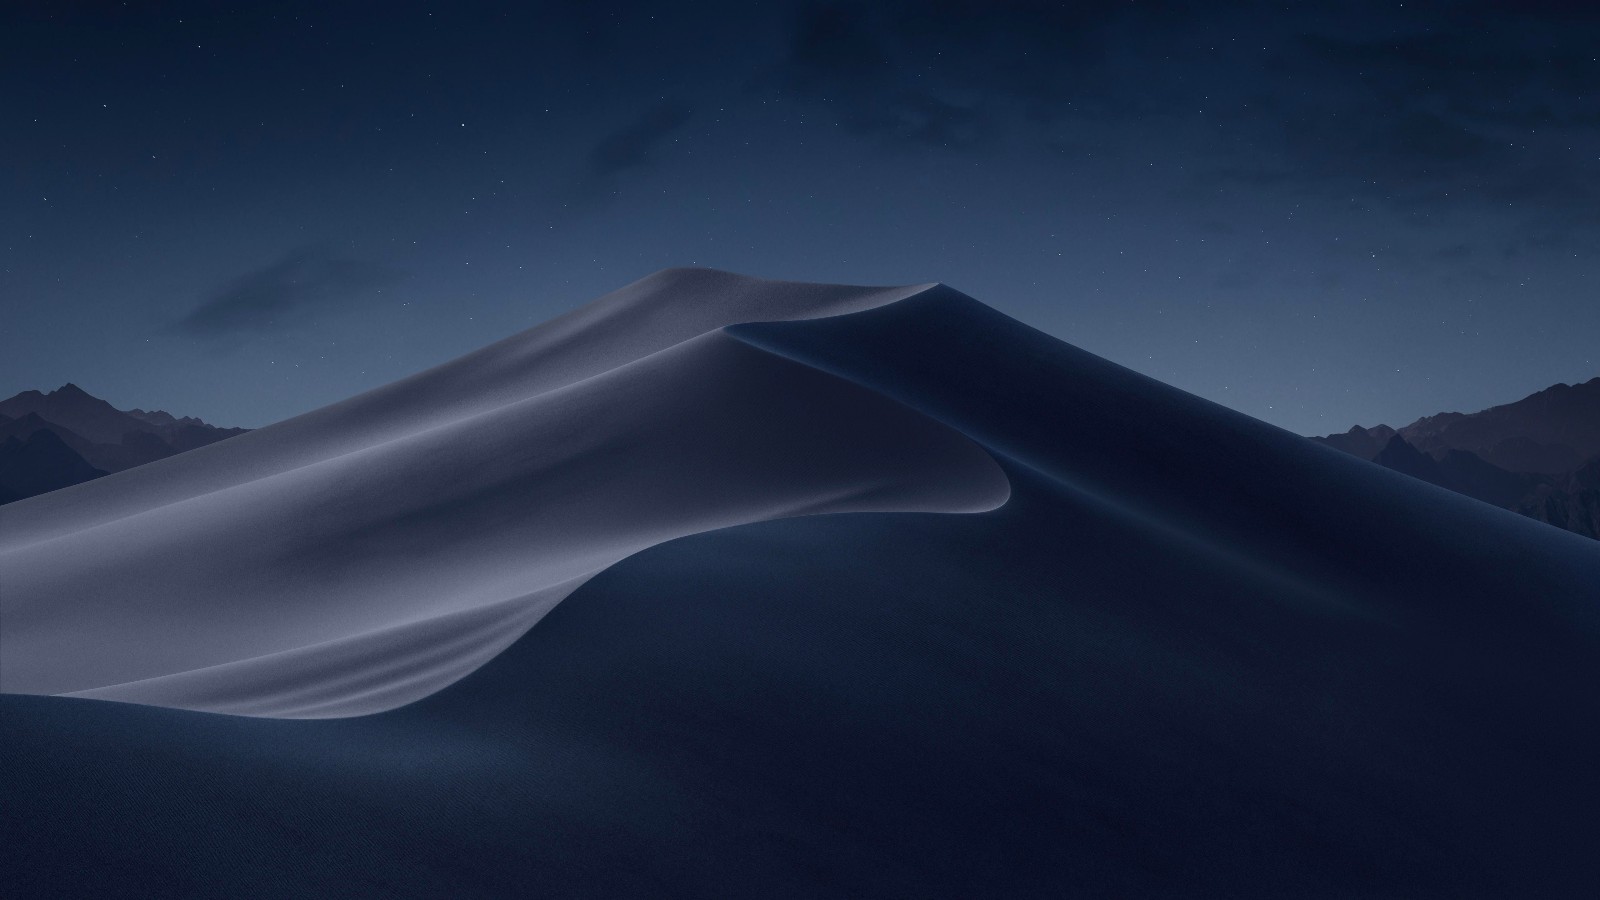 3张苹果ios 12最新发布的壁纸,神秘的莫哈维沙漠,喜欢